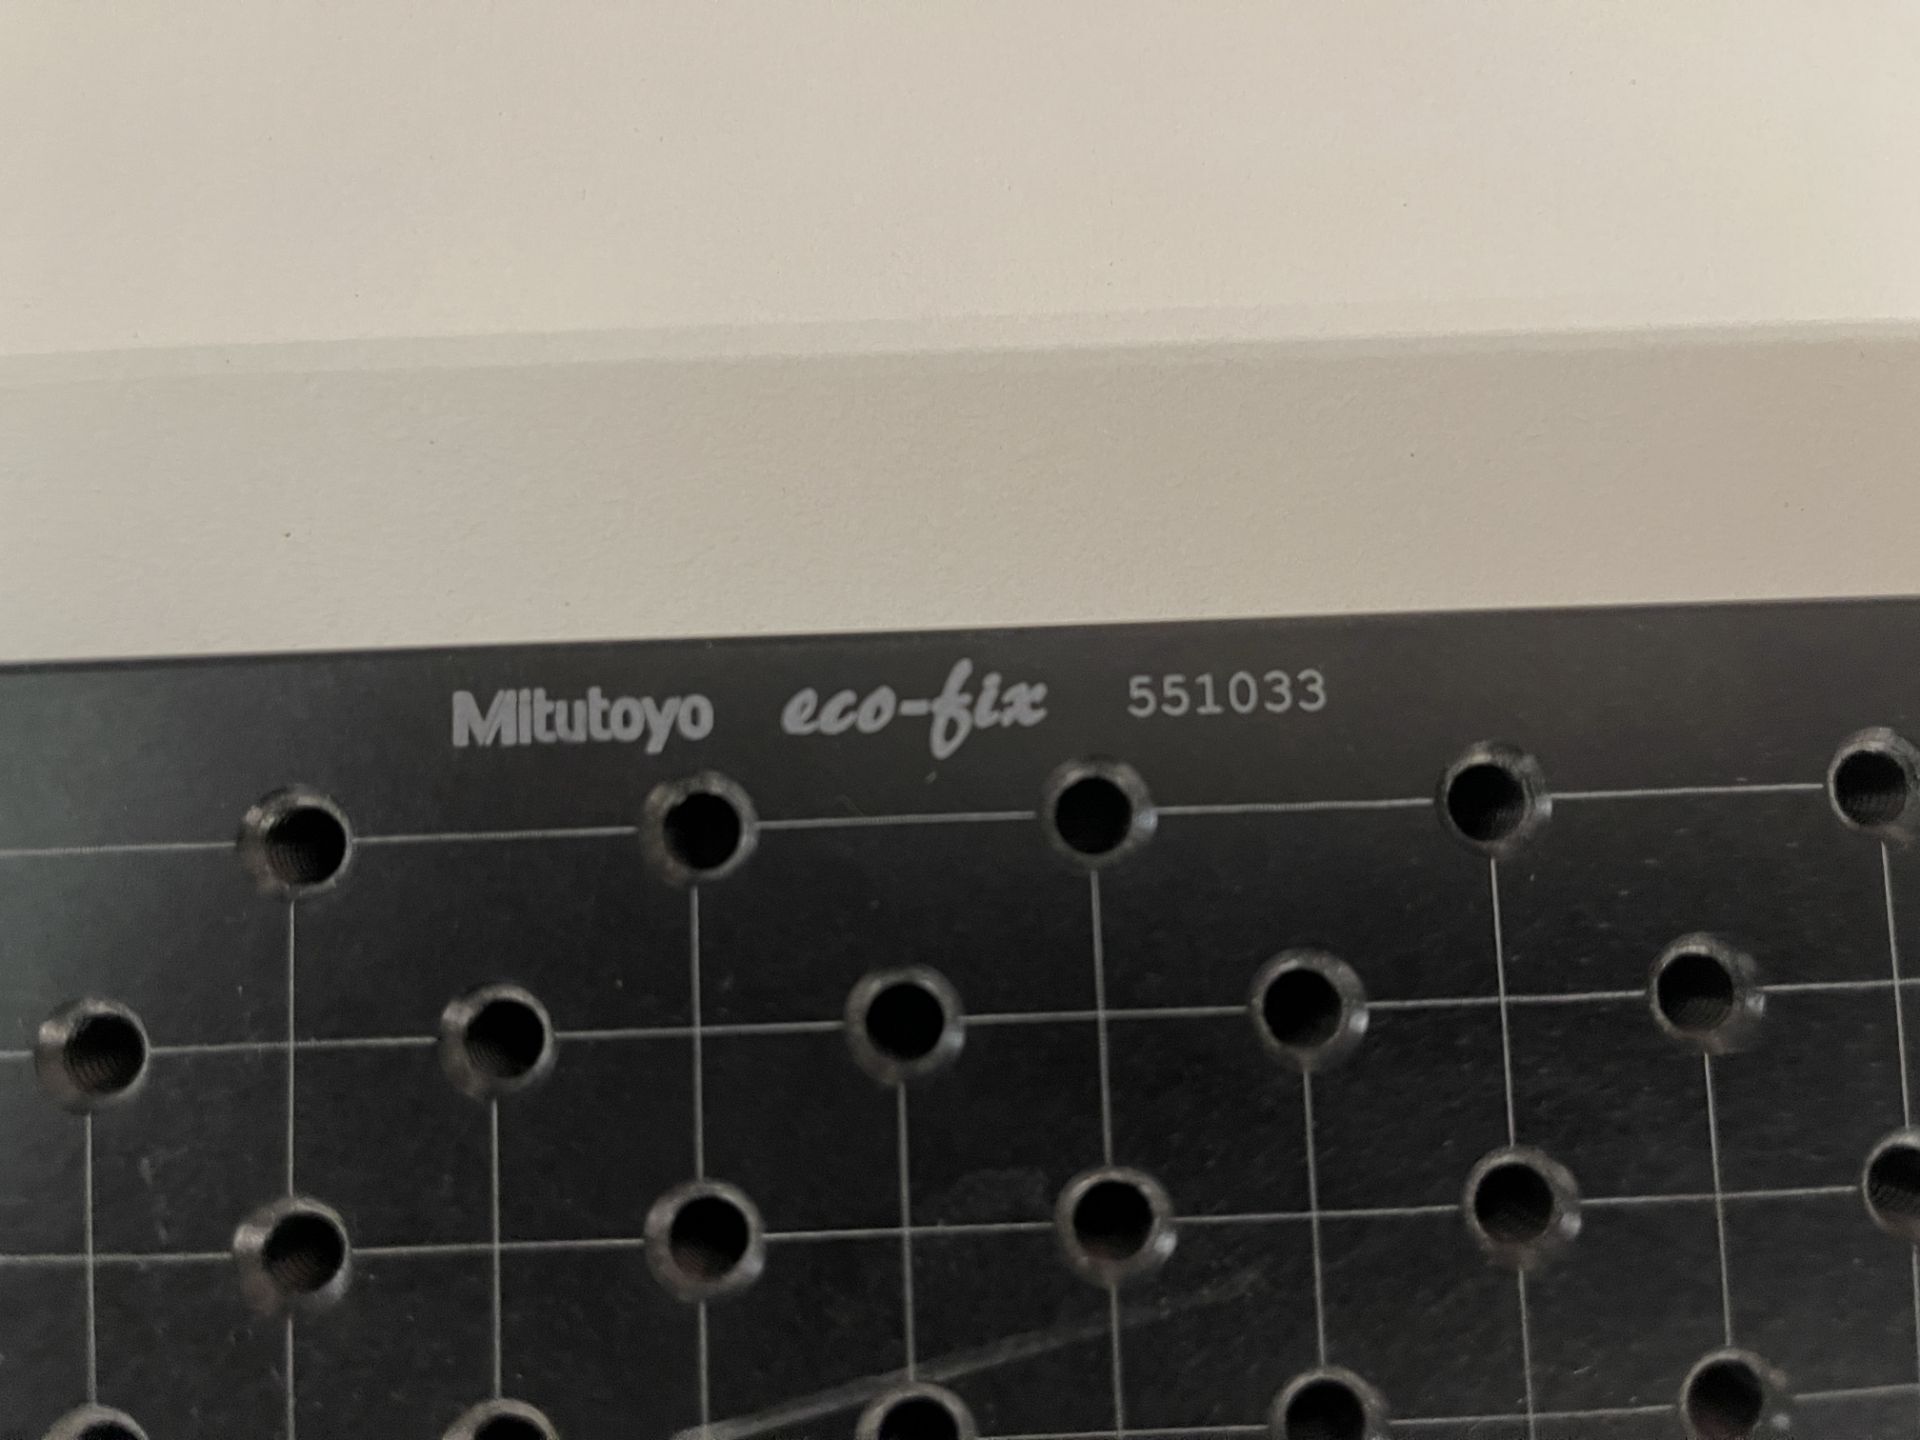 Mitutoyo ECO-FIX 50 cm x 40 cm - Image 2 of 2